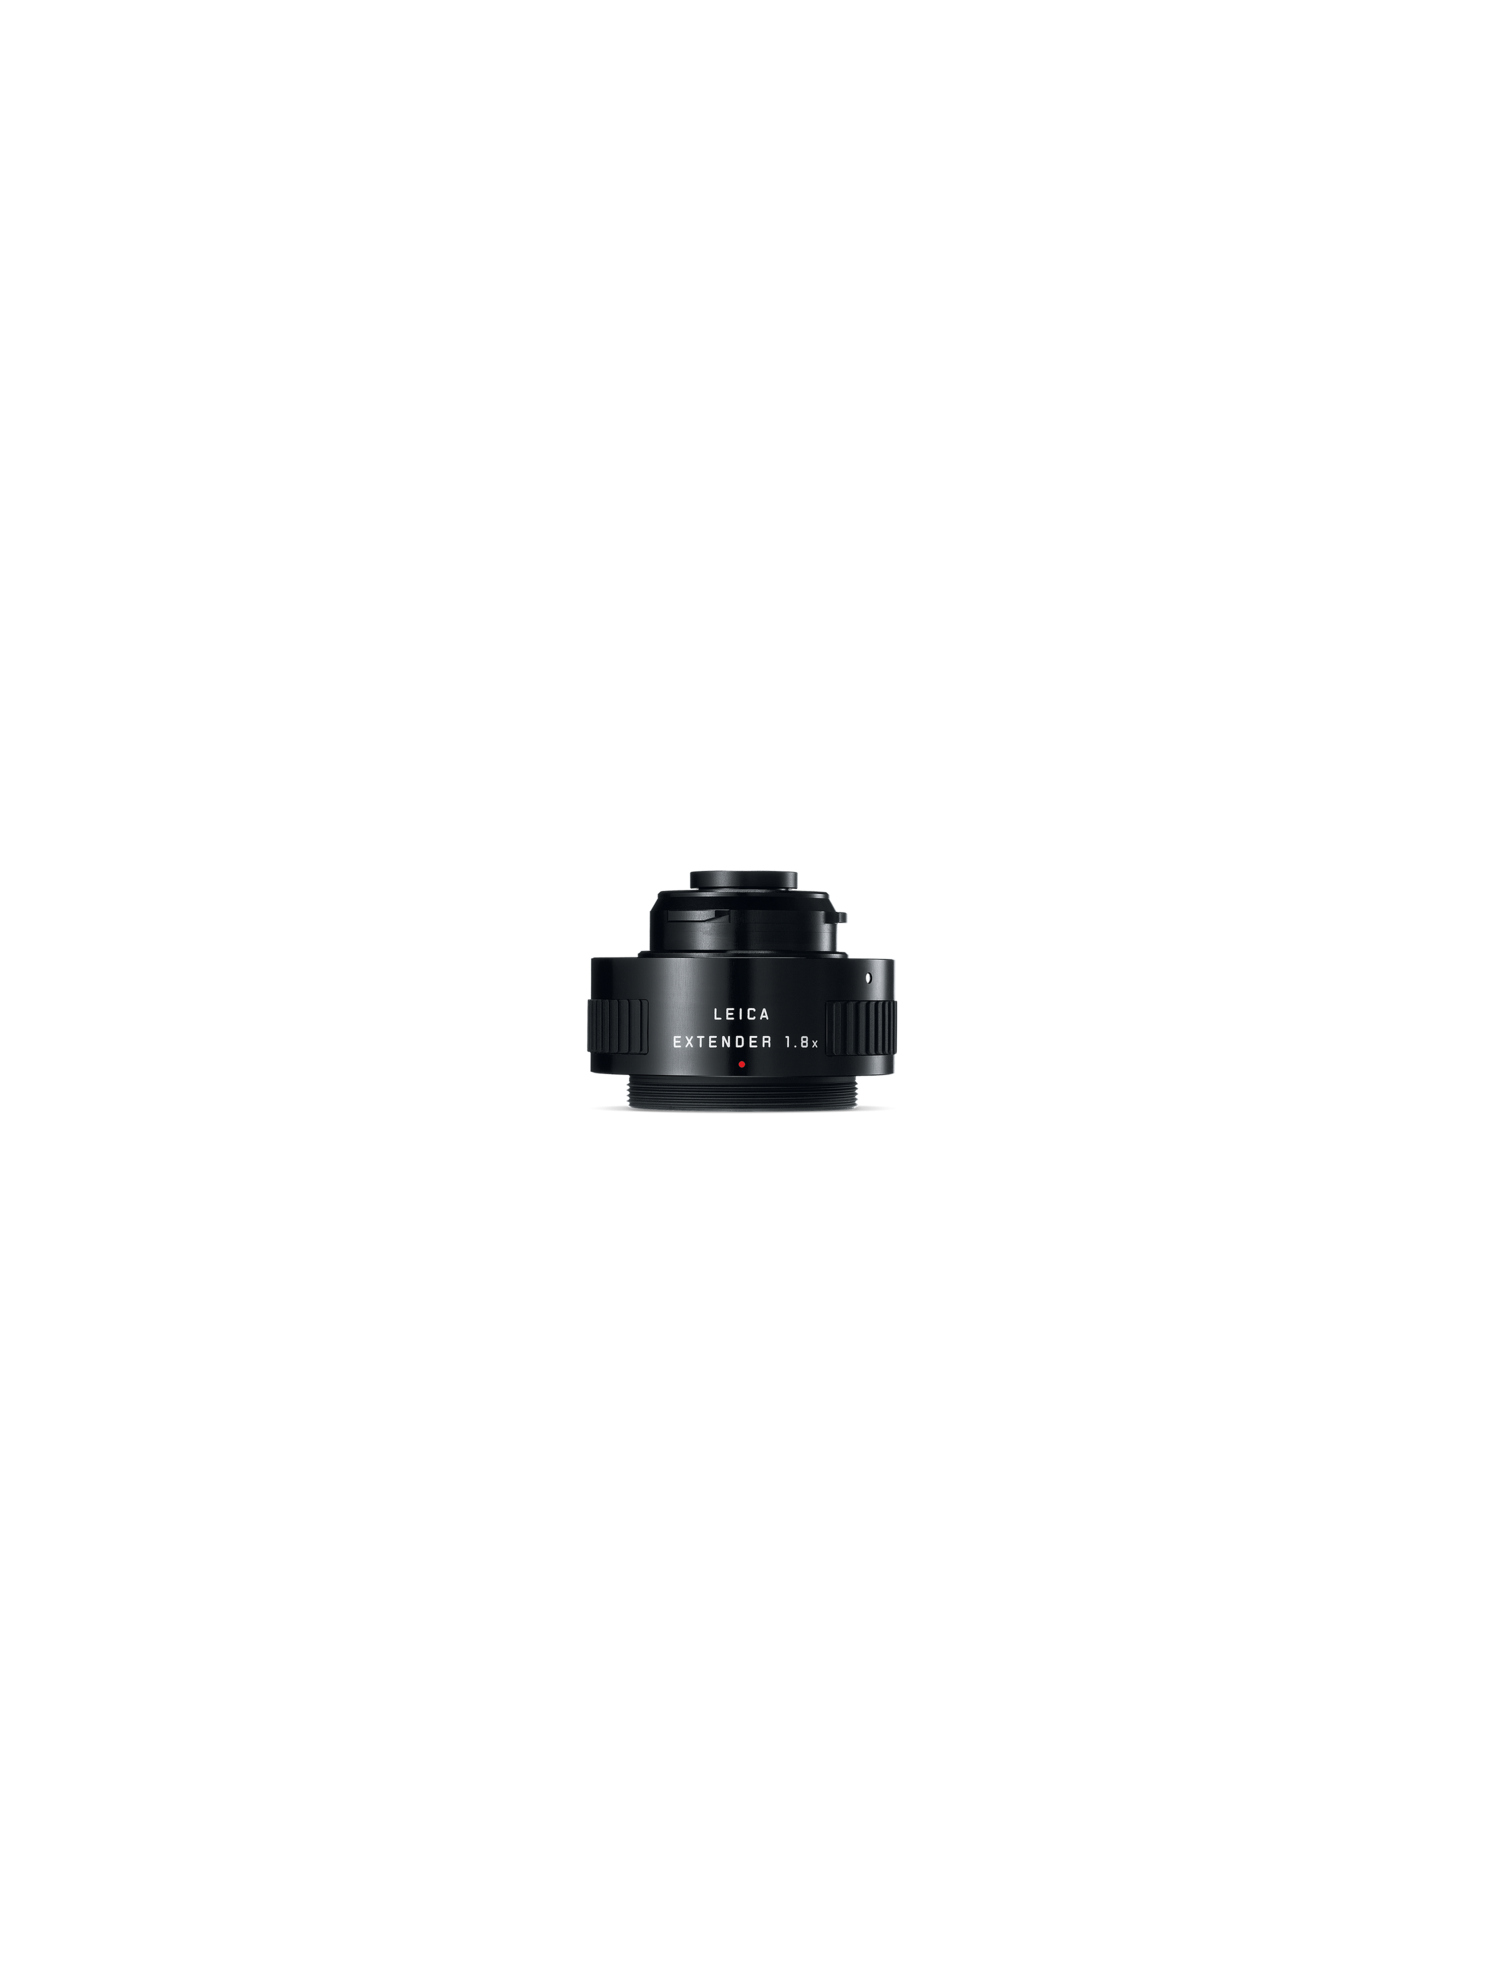 Leica extender 1